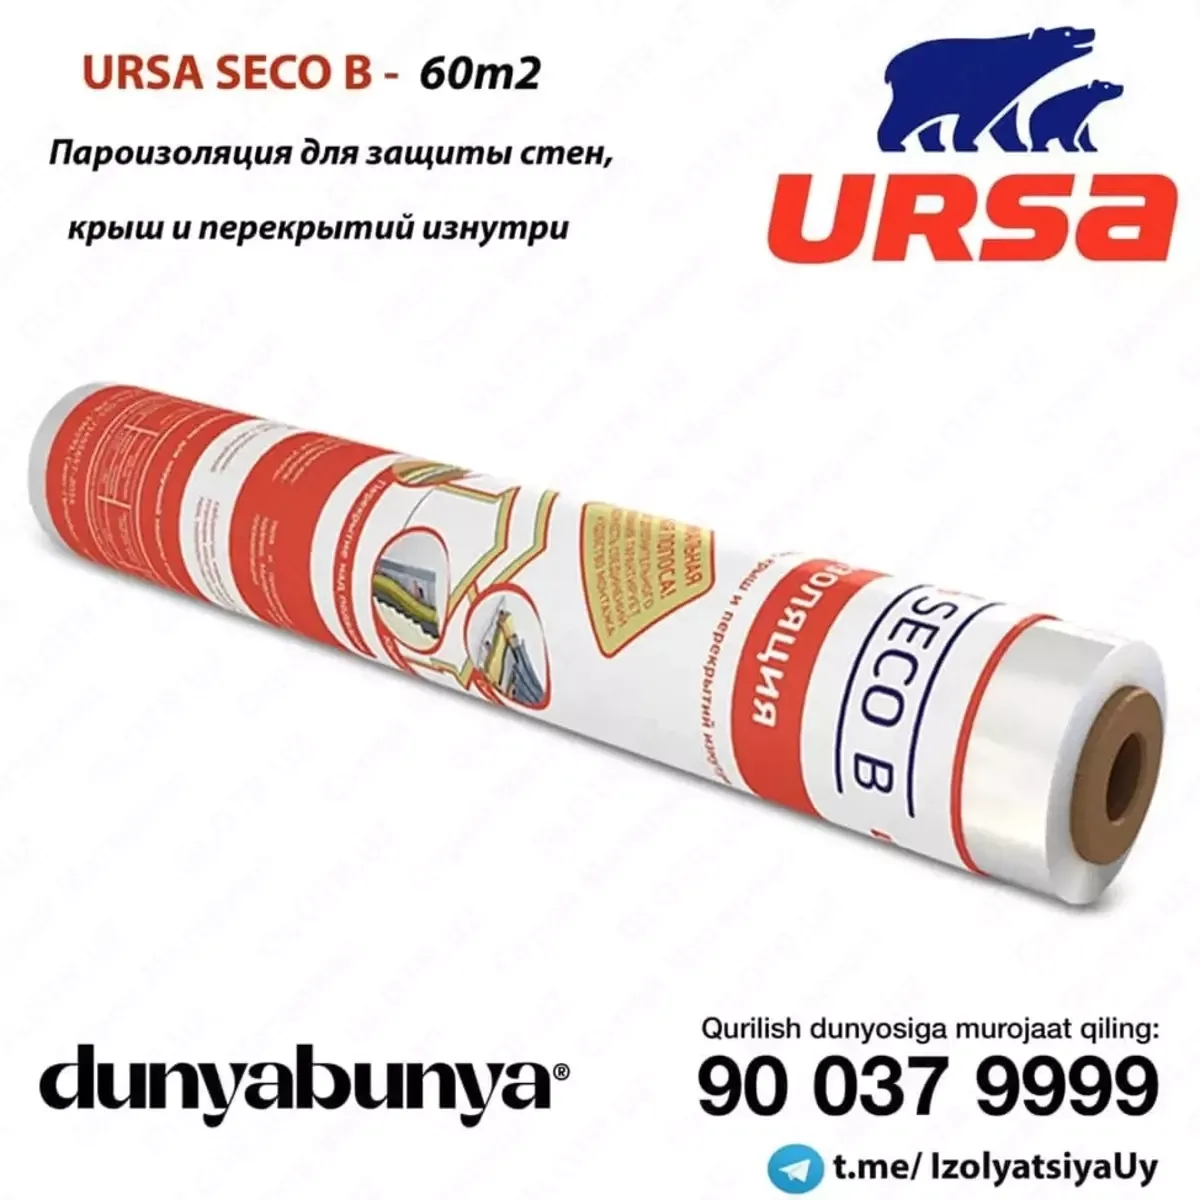 Пароизоляция URSA Seco B для защиты стен, крыш и перекрытий изнутри#1